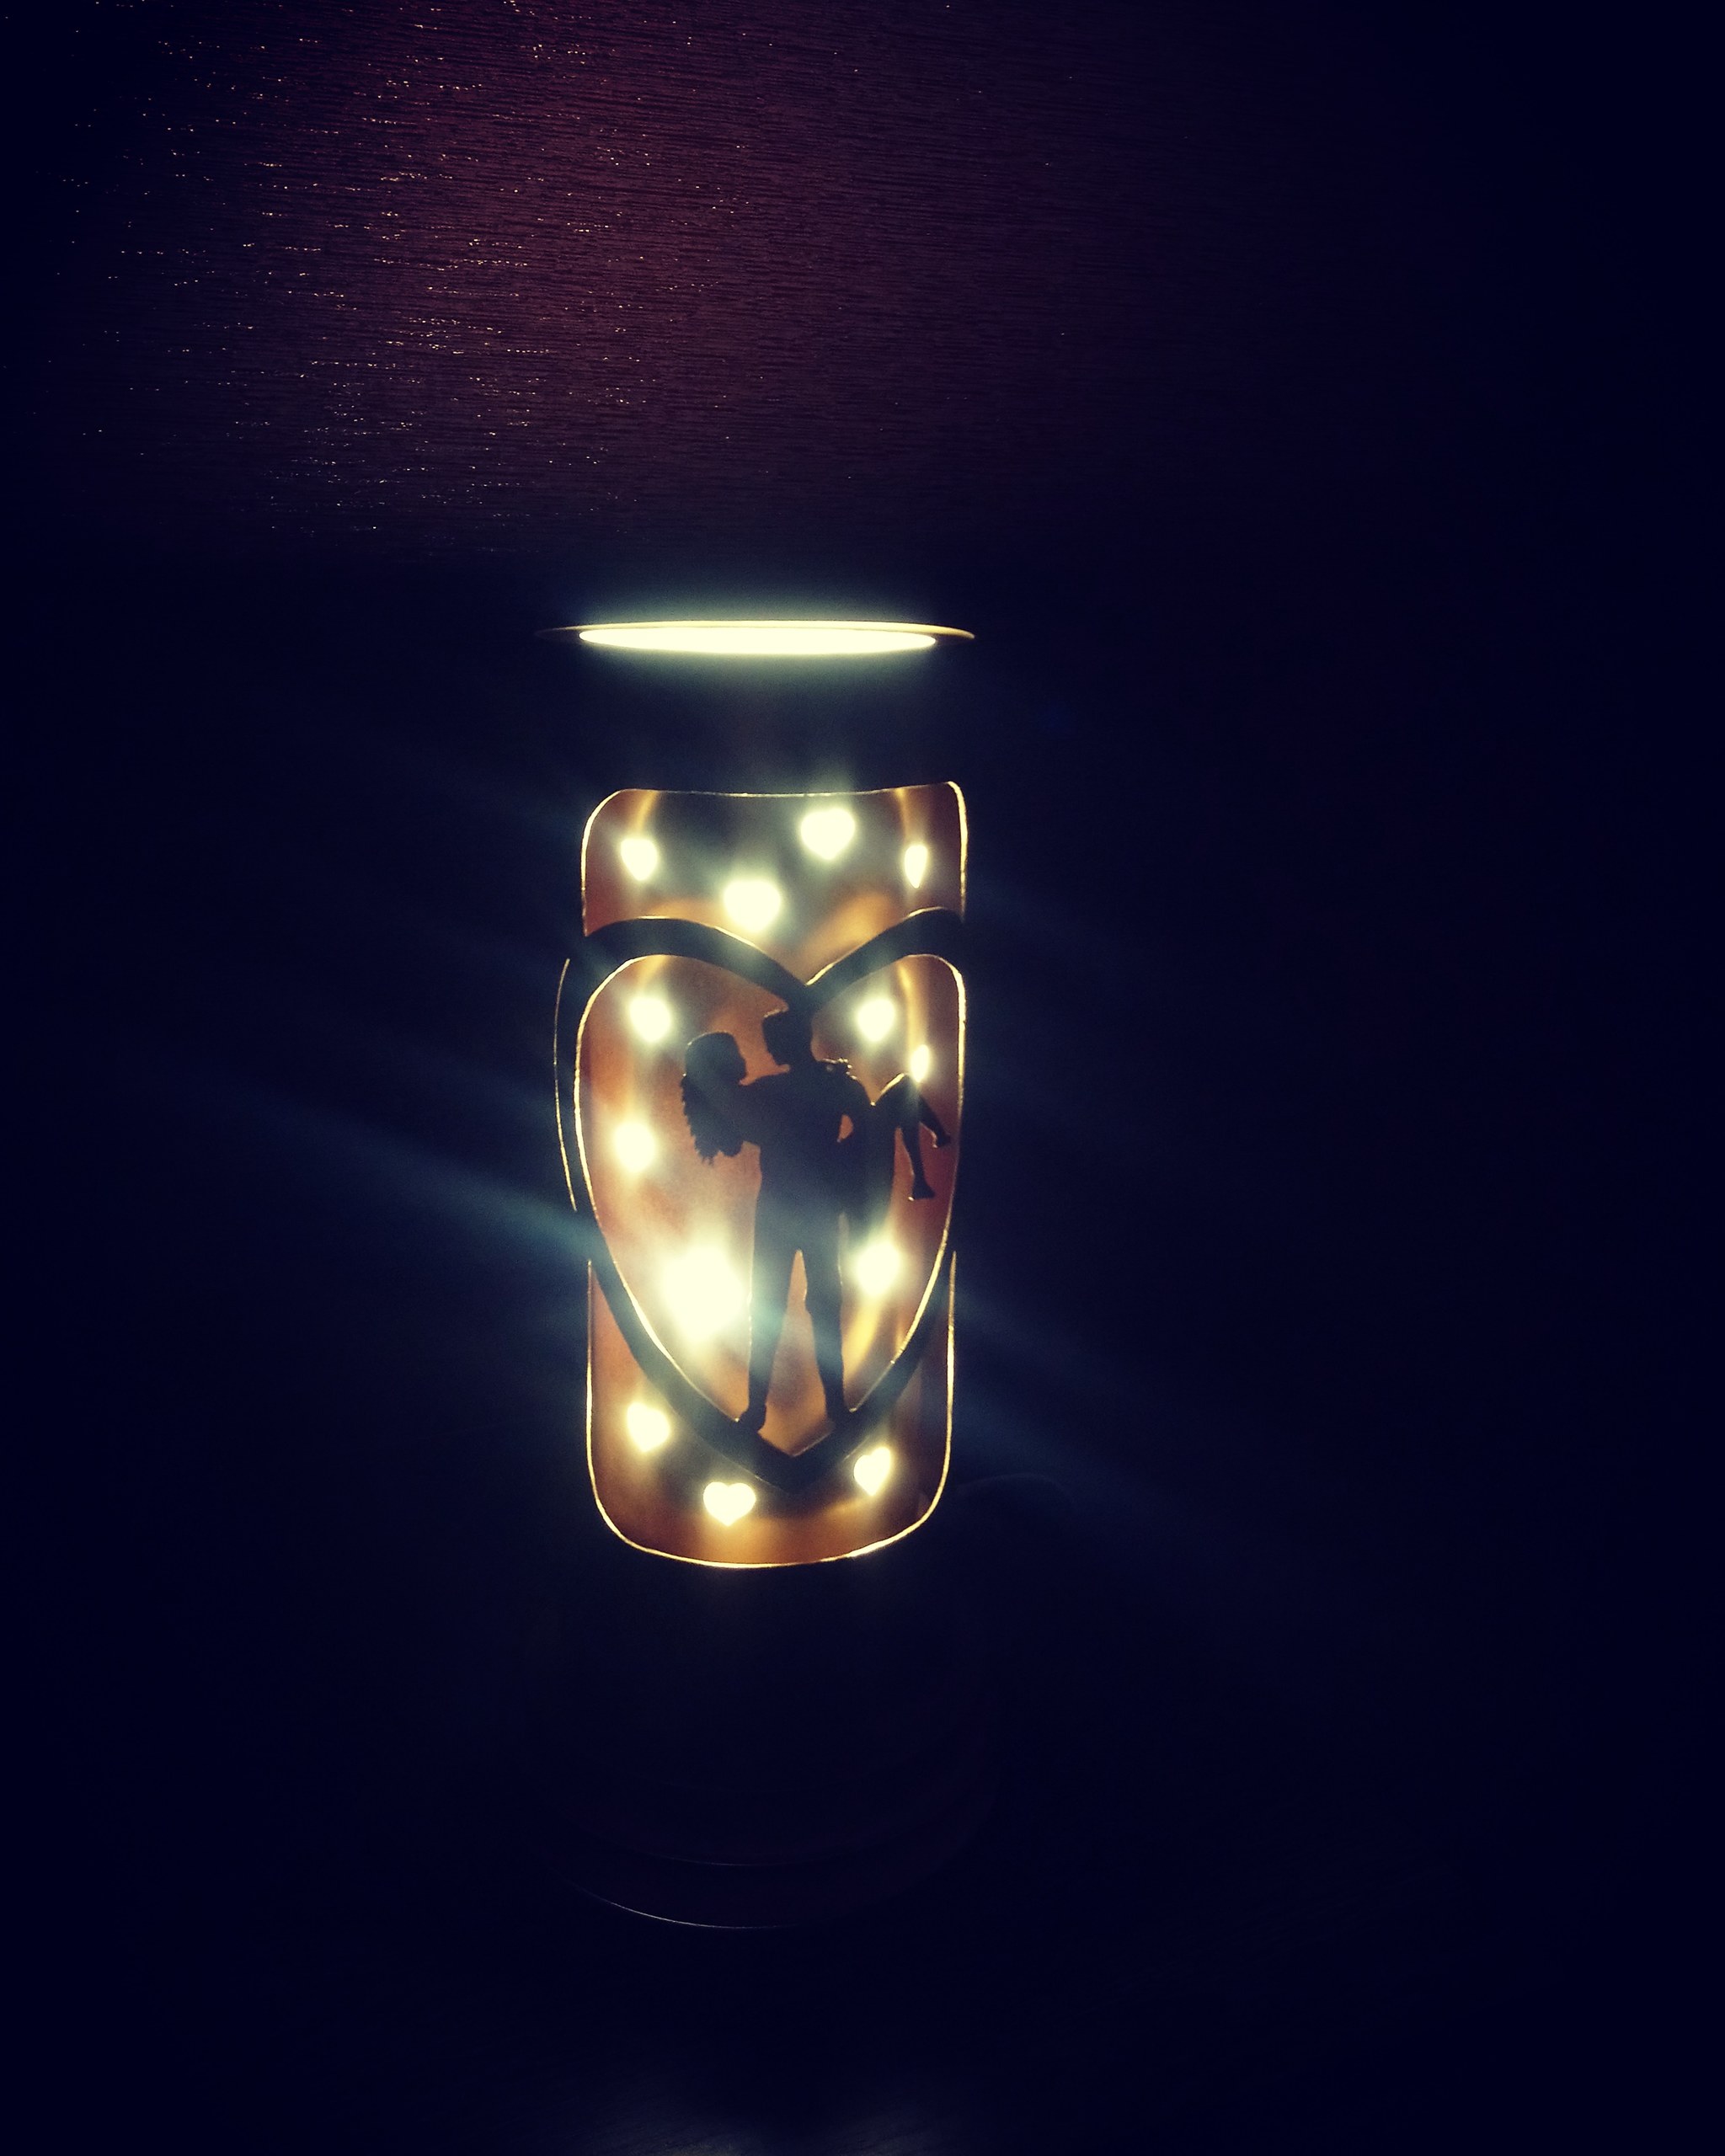 Светильник ночник из вентиляционных пвх труб | Пикабу